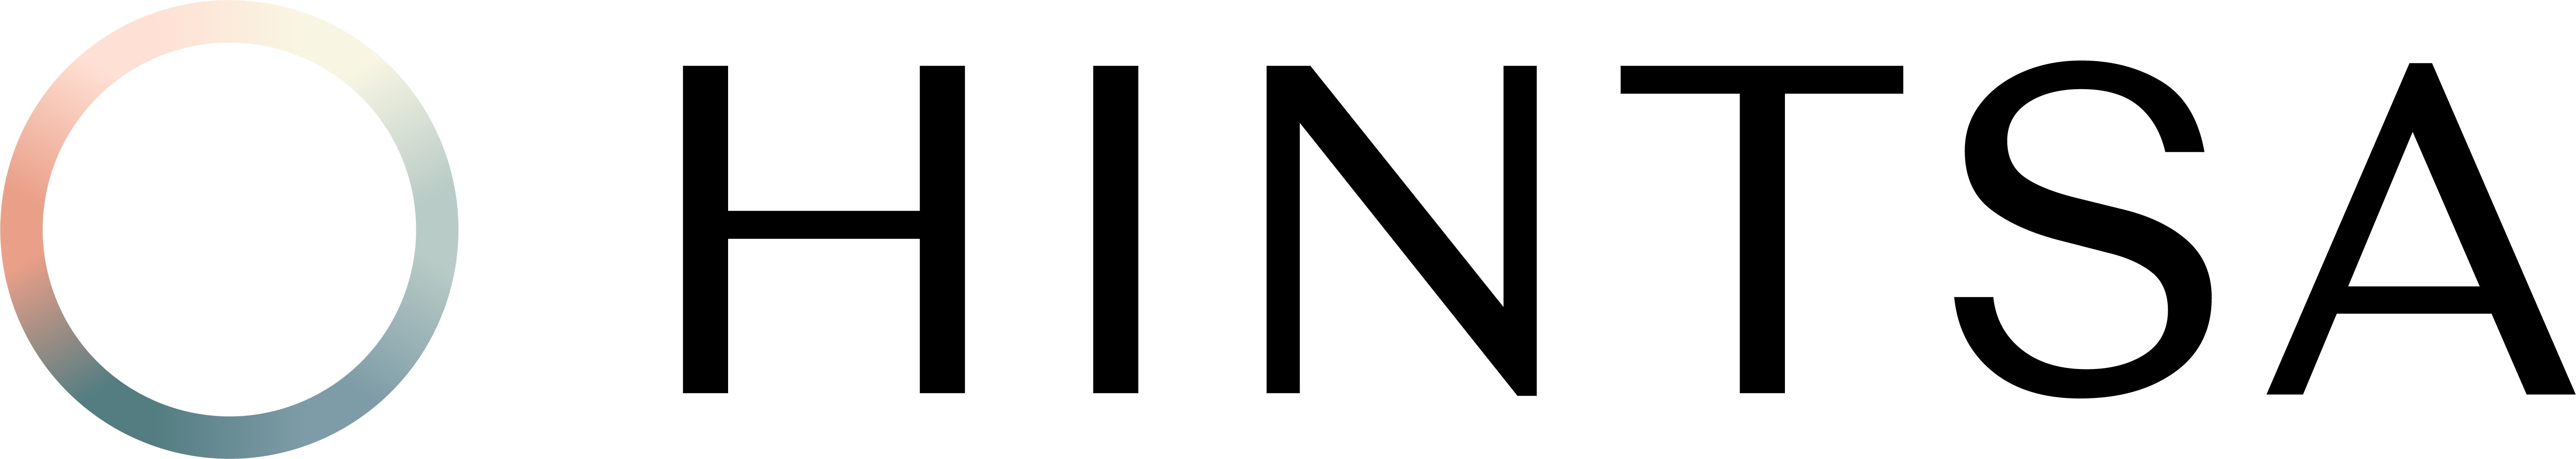 hintsa-logo-solid.png